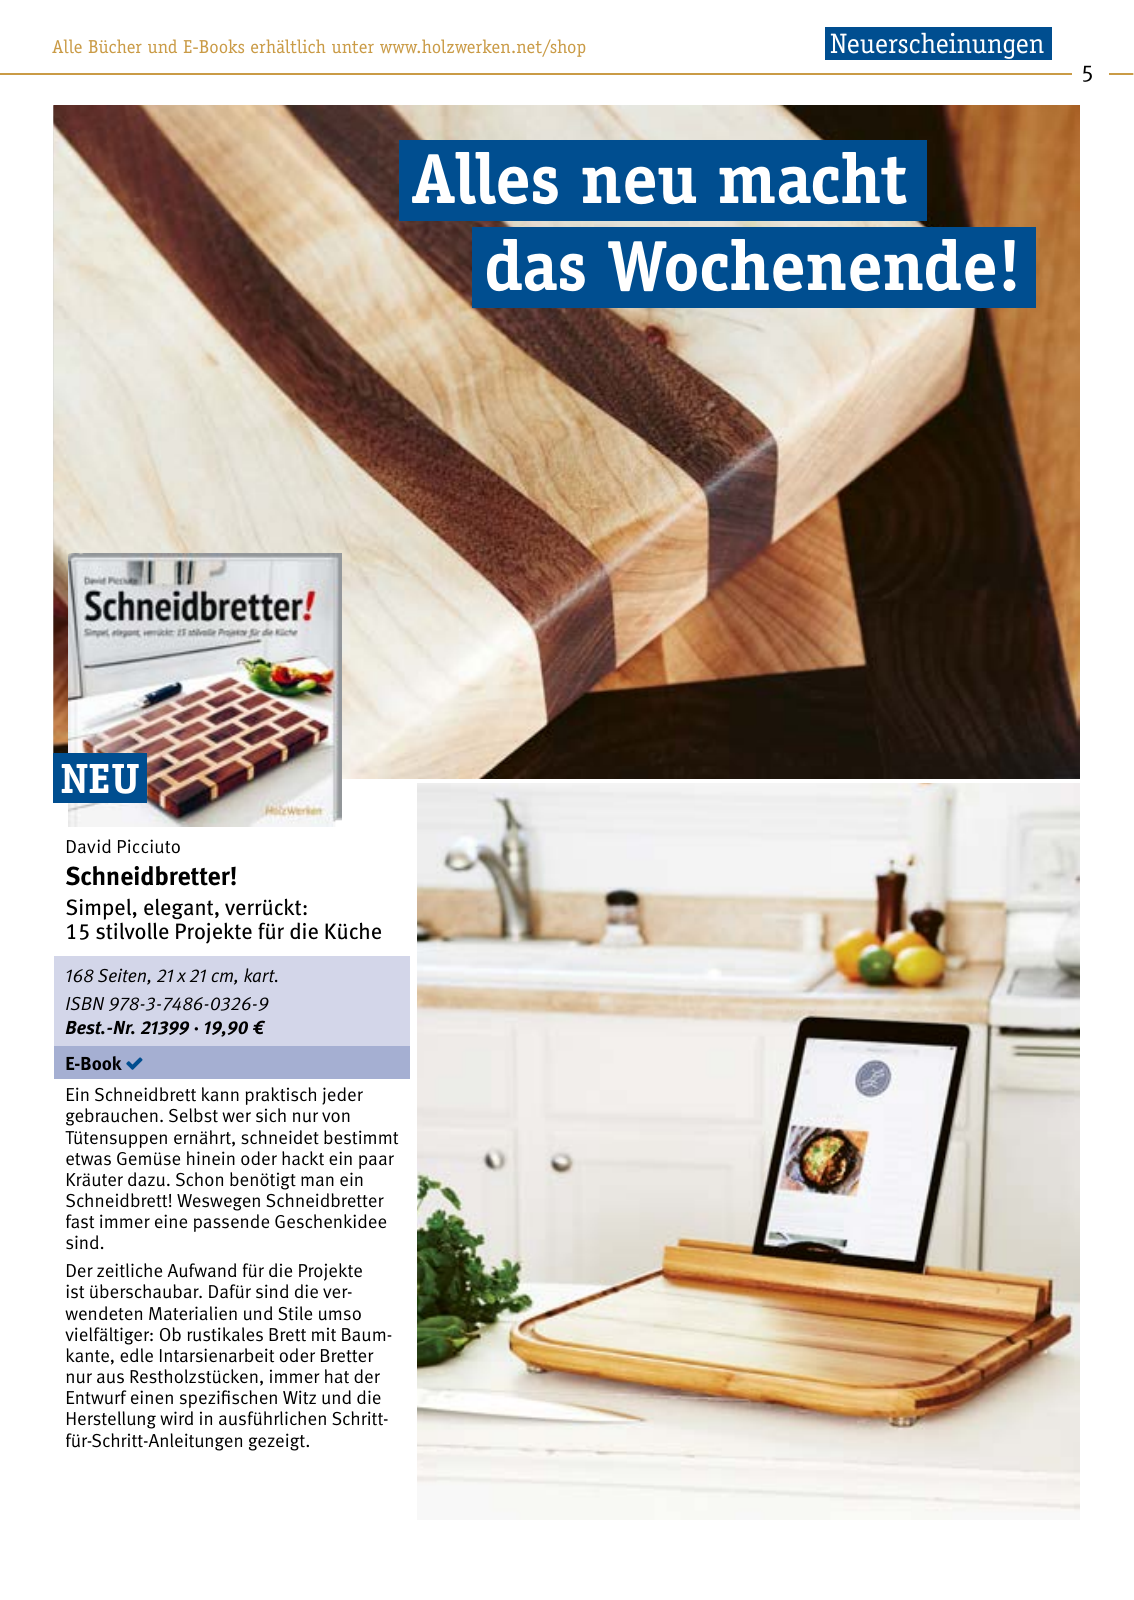 Vorschau HolzWerken Katalog 2021 Seite 5